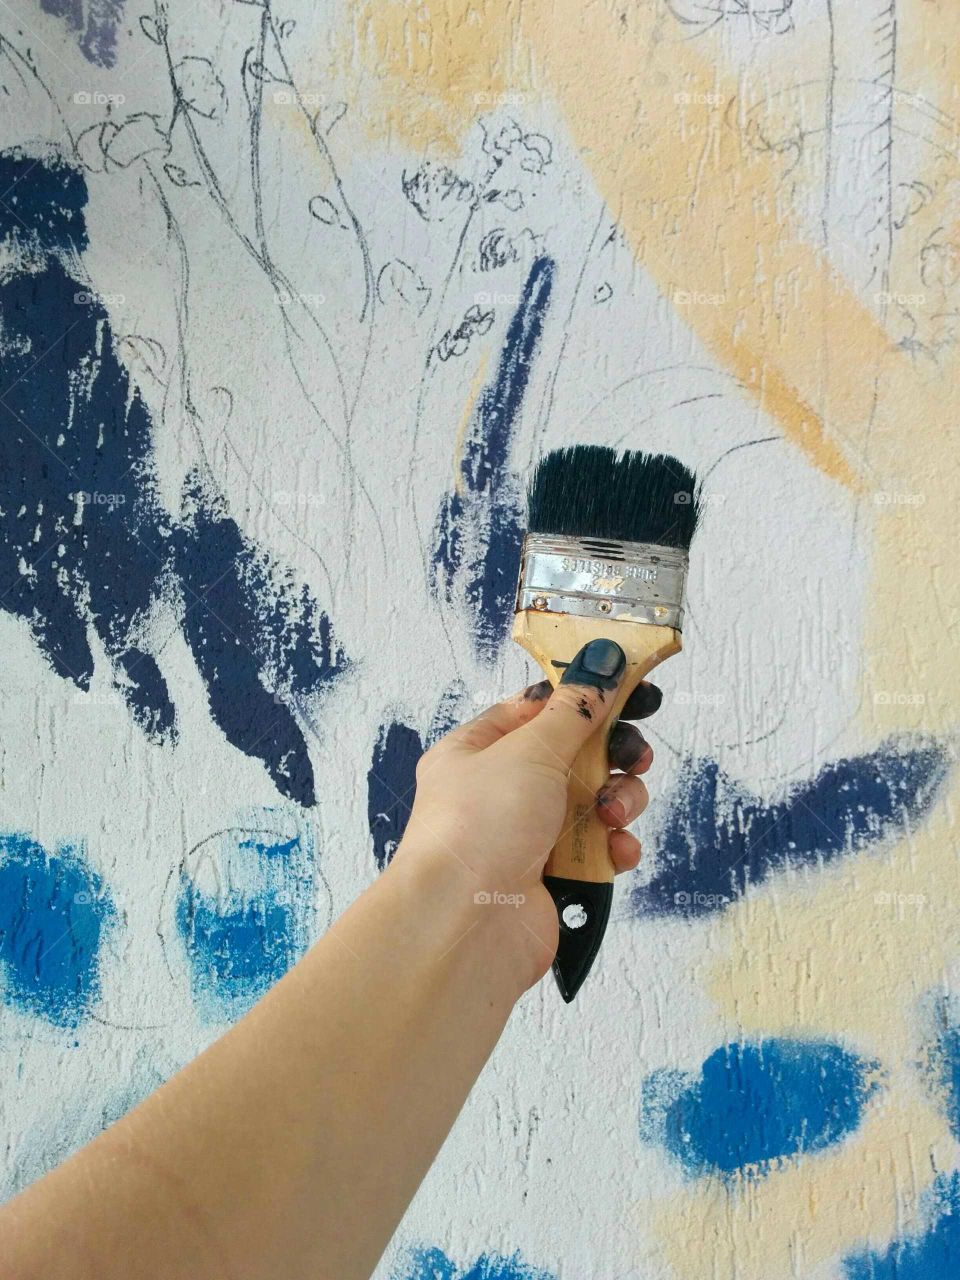 Painting, Brush, Painter, Wall, Paintbrush